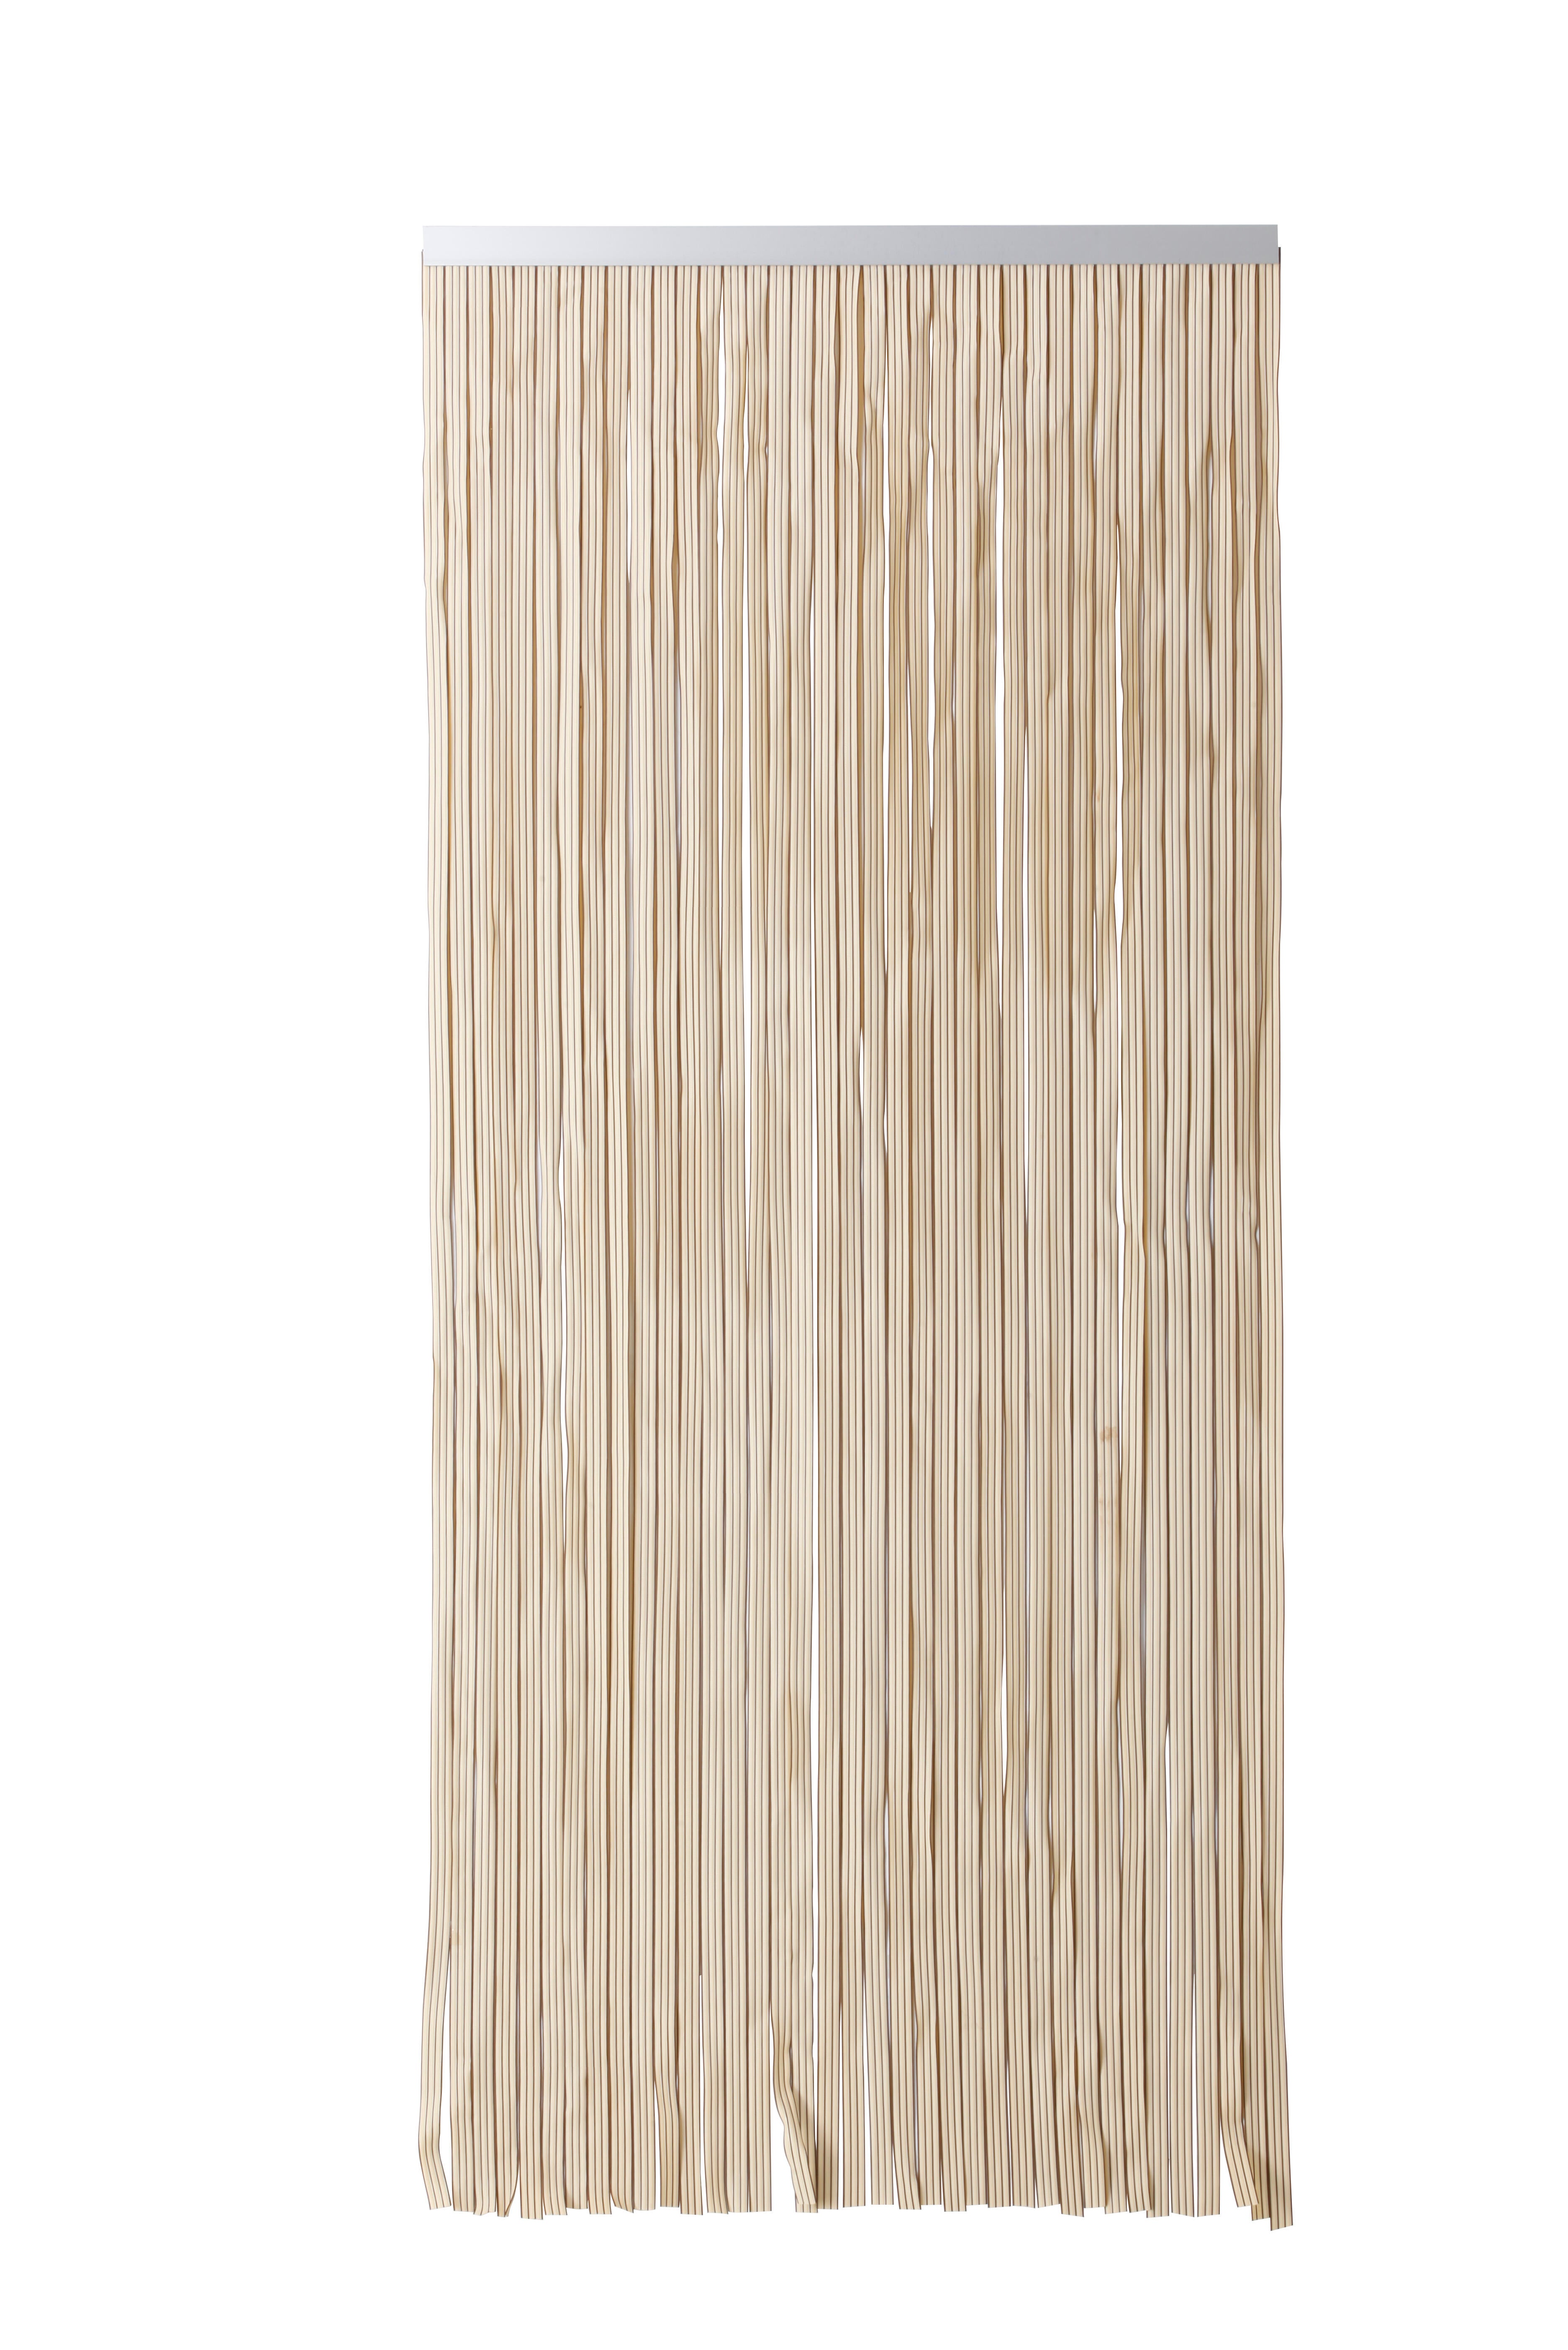 Cortina de puerta pvc cintas marfil 90 x 210 cm